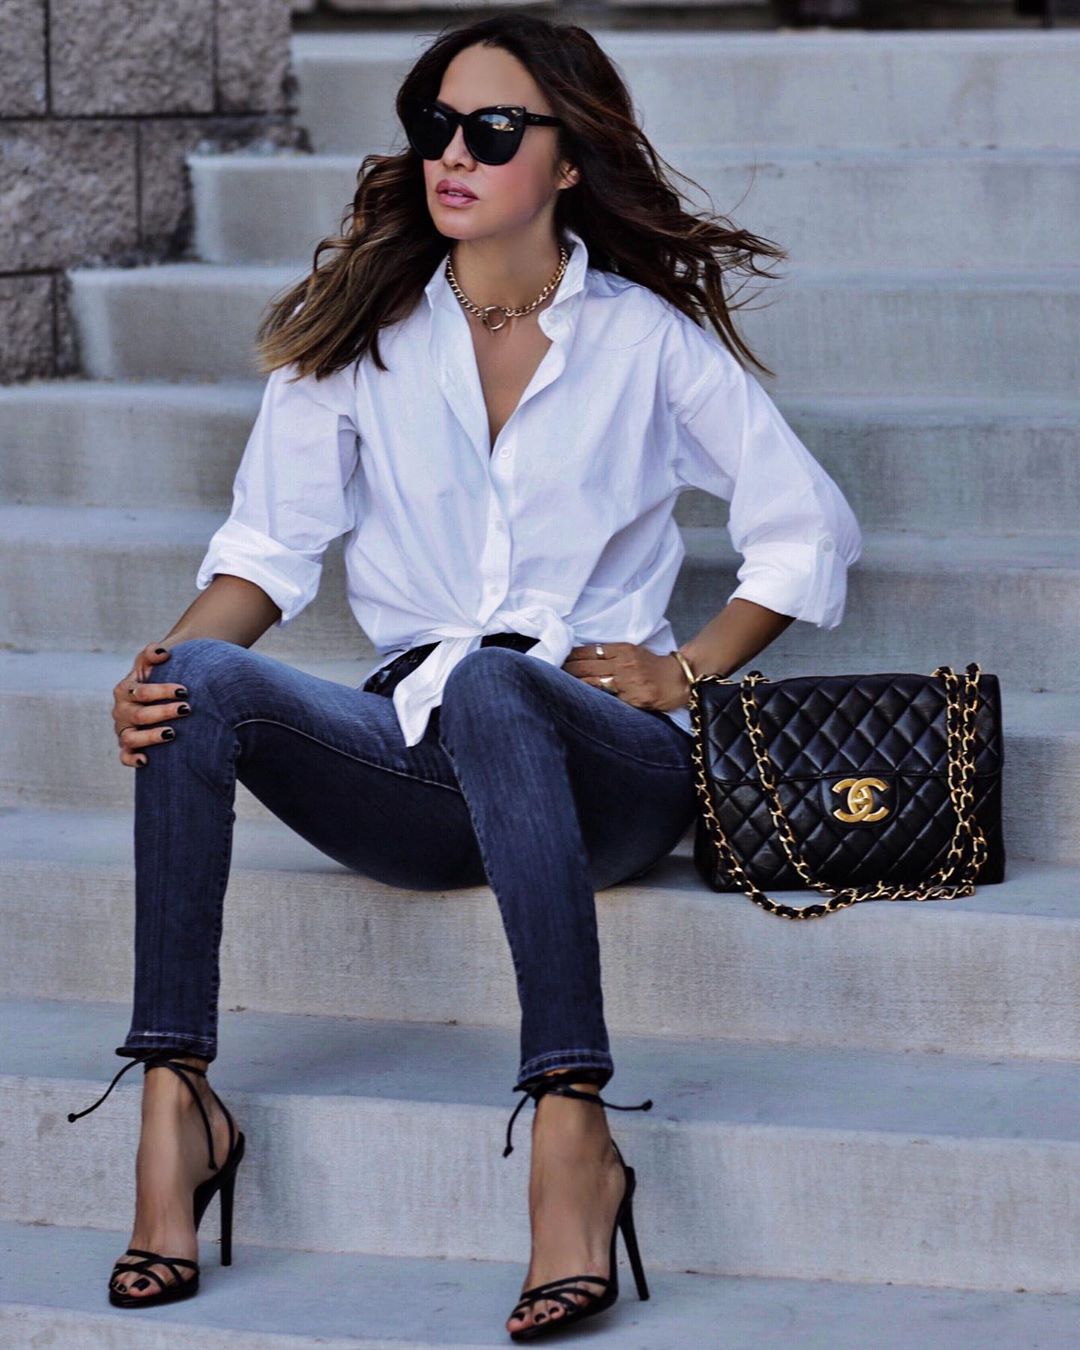 джинсы и белая рубашка женская фото